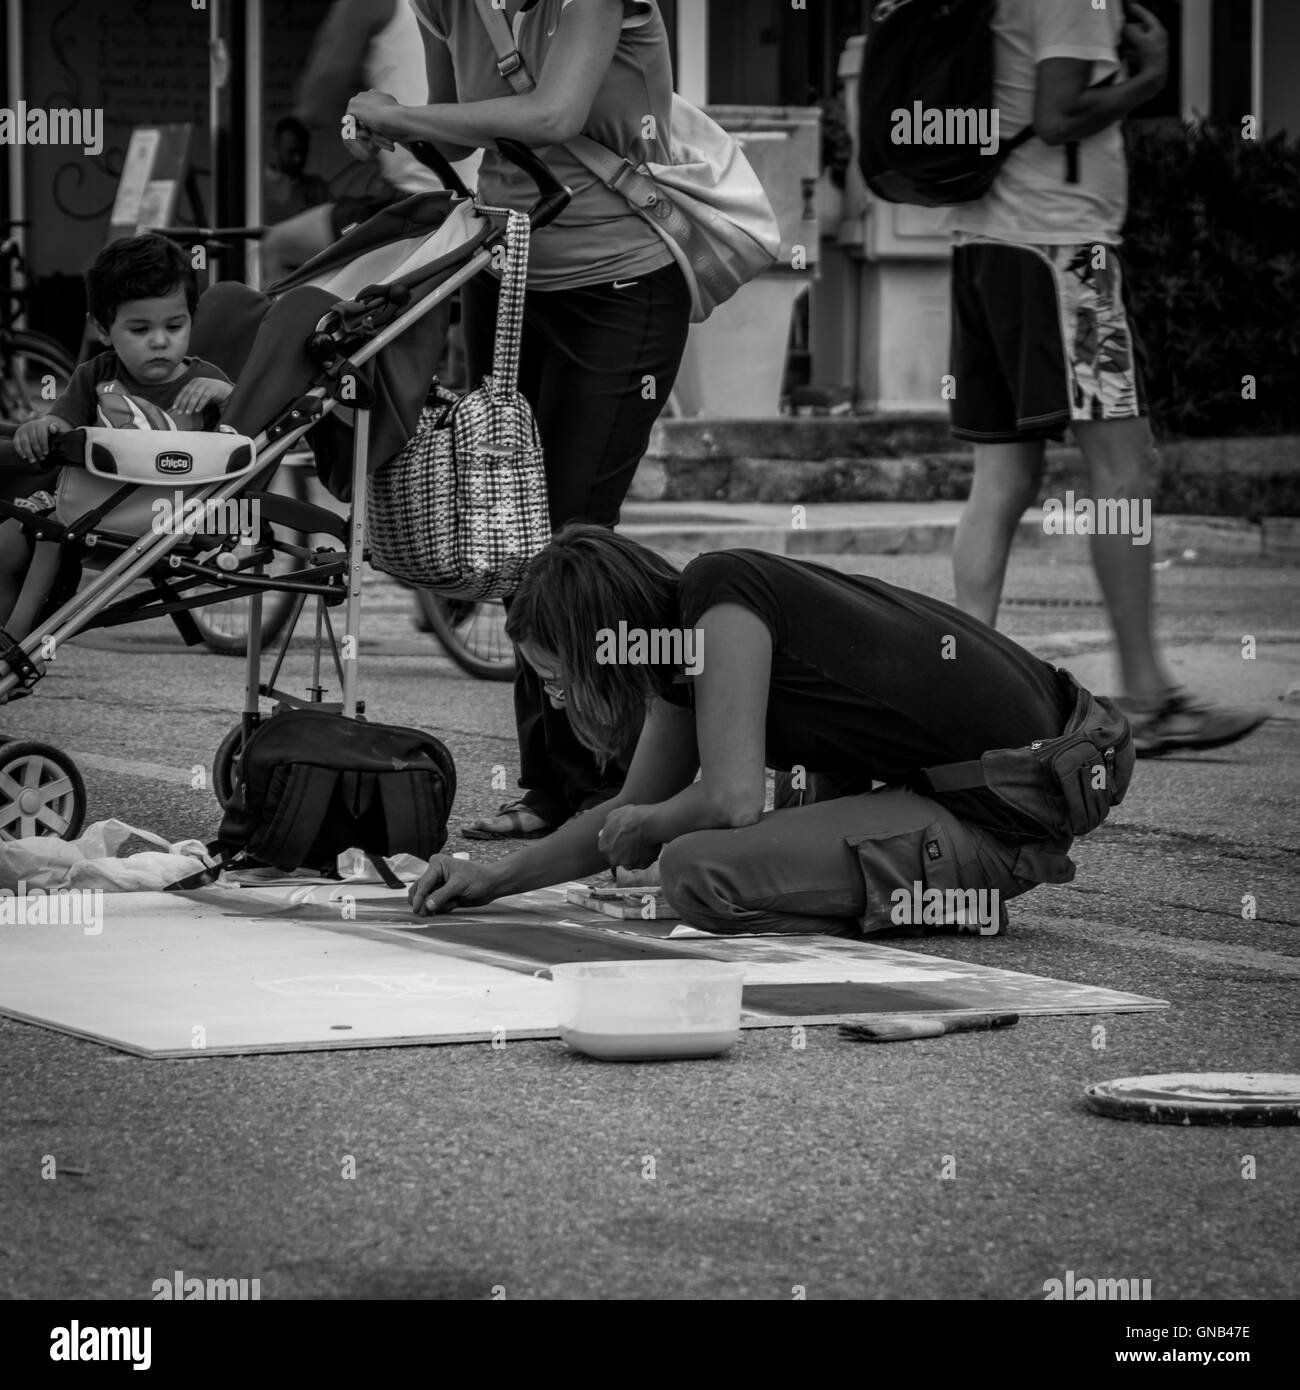 Pescara, Italie - 13 août 2016 : Pescara, Italie. Femme artiste dessin sur la rue. La photographie noir et blanc Banque D'Images